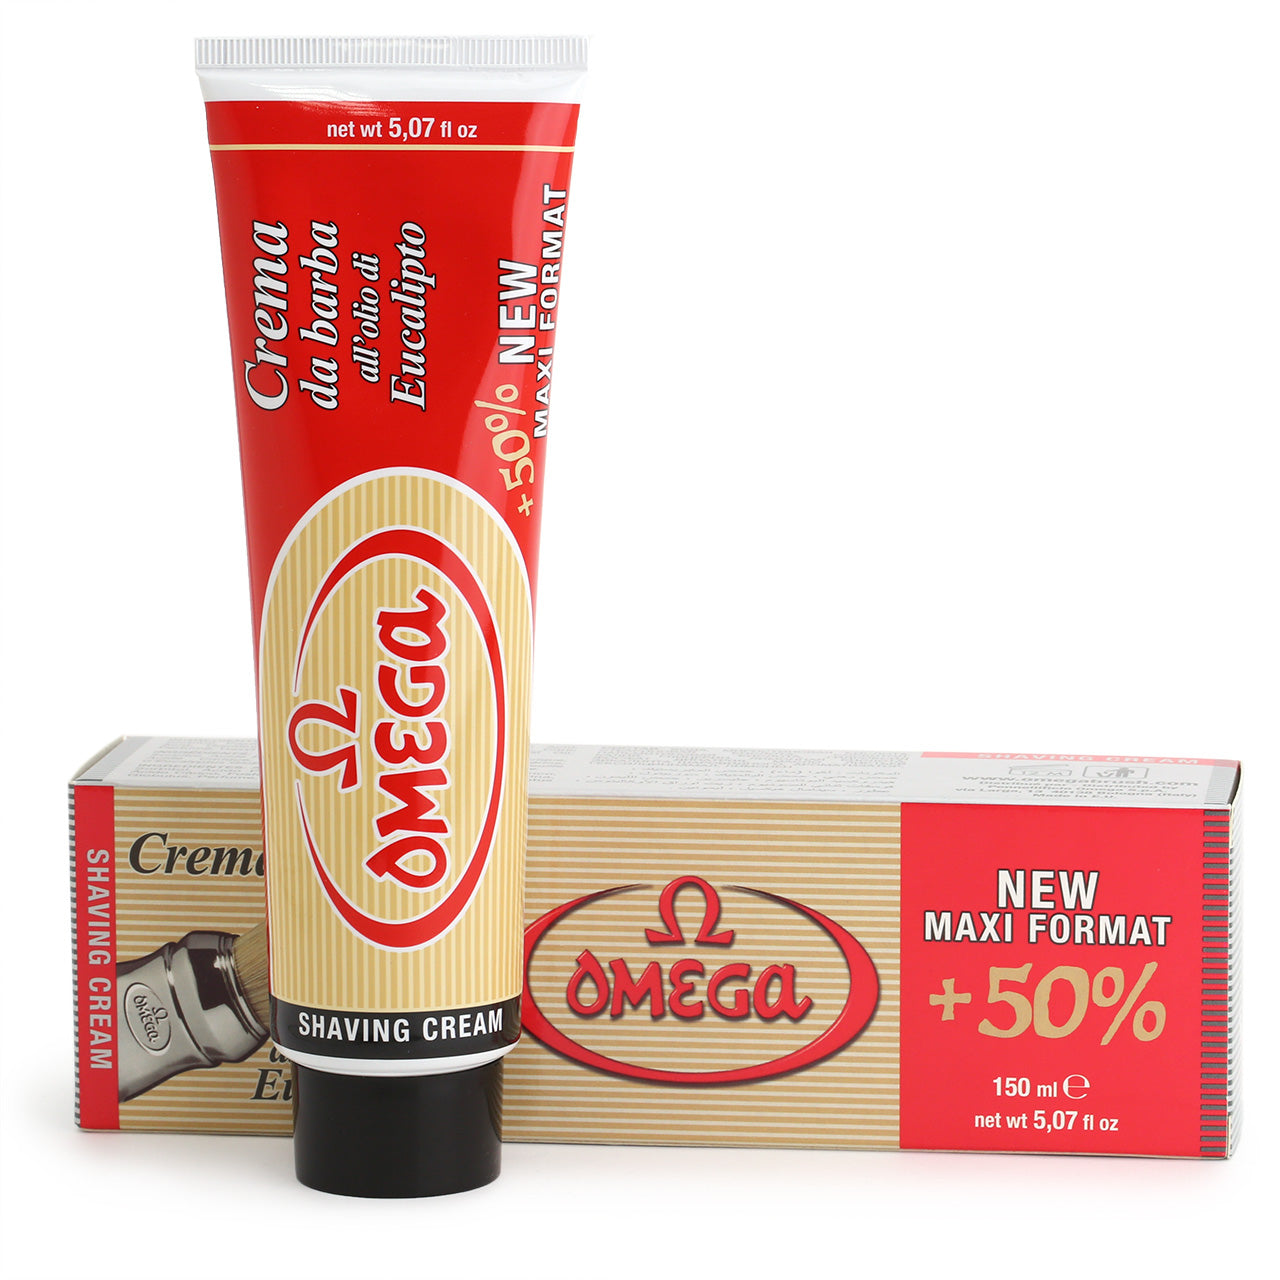 Omega Shaving Cream 150ml in a tube